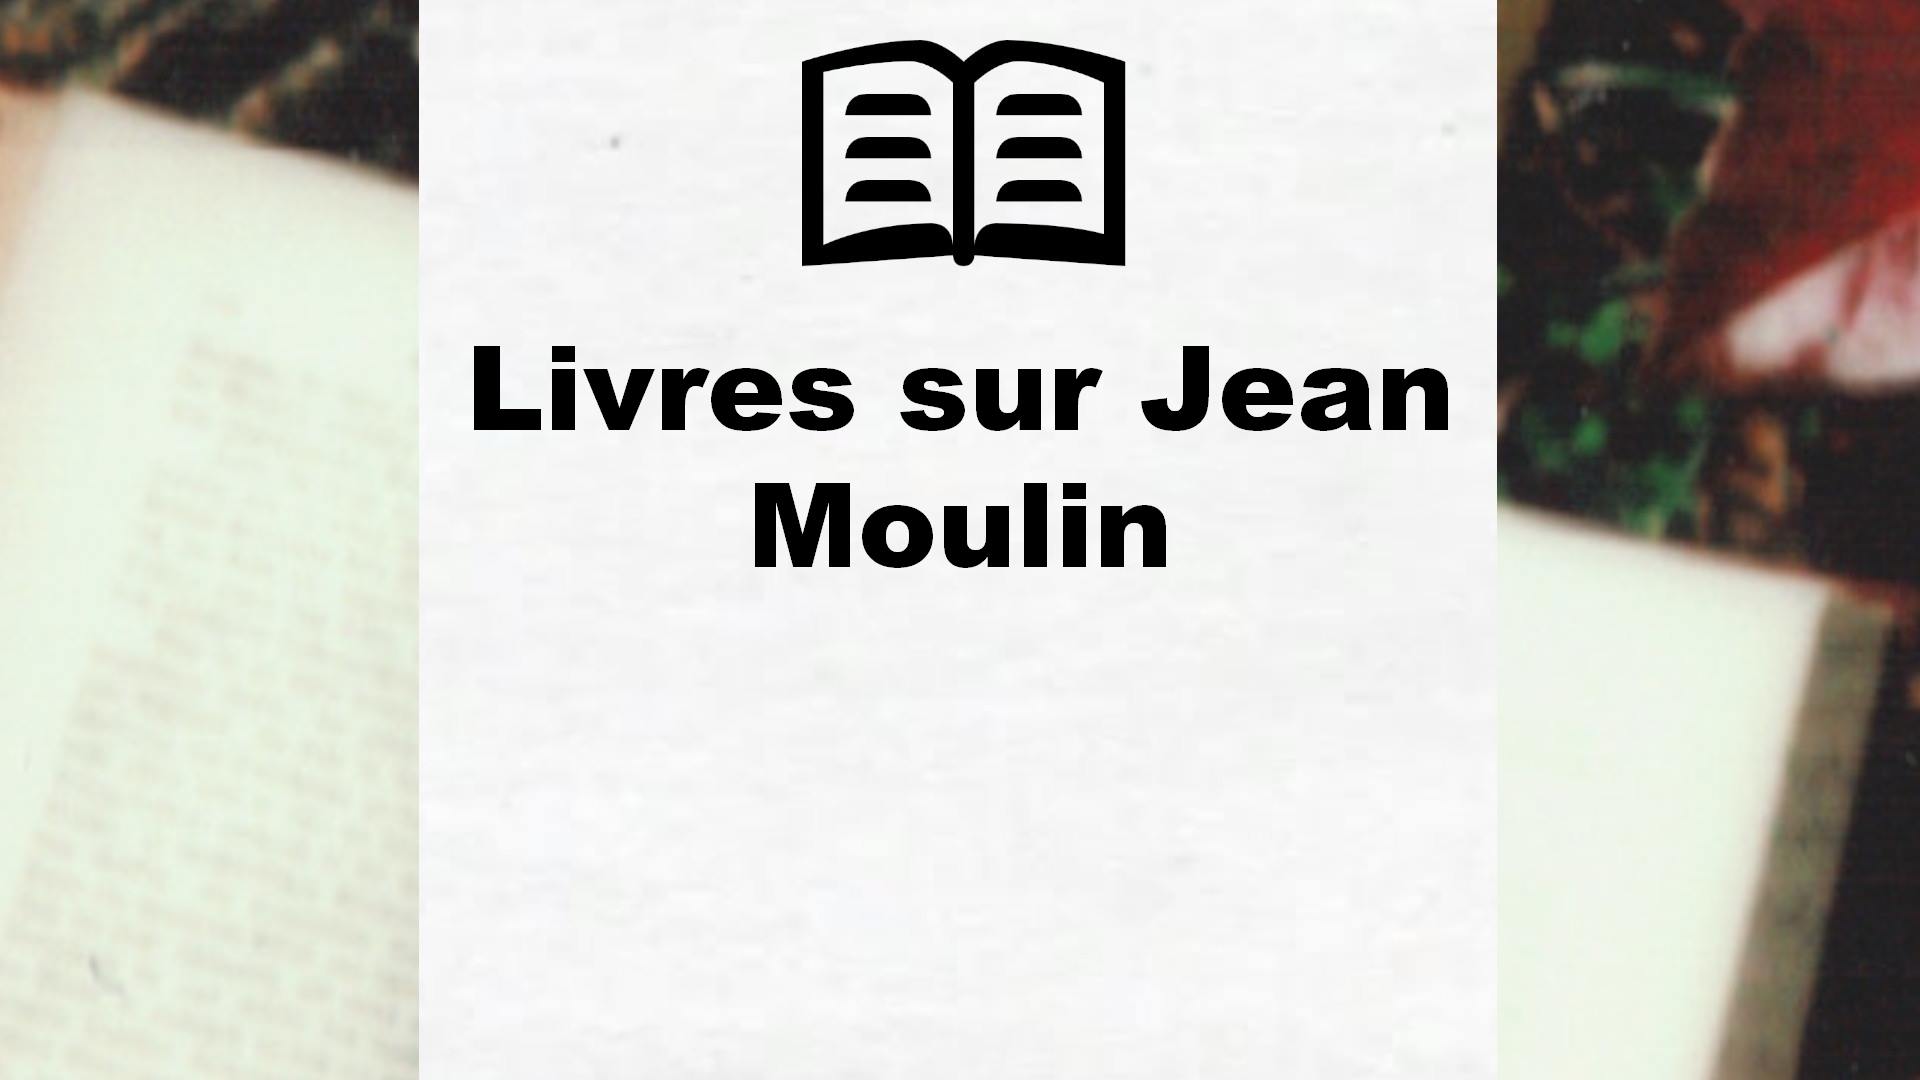 Livres sur Jean Moulin